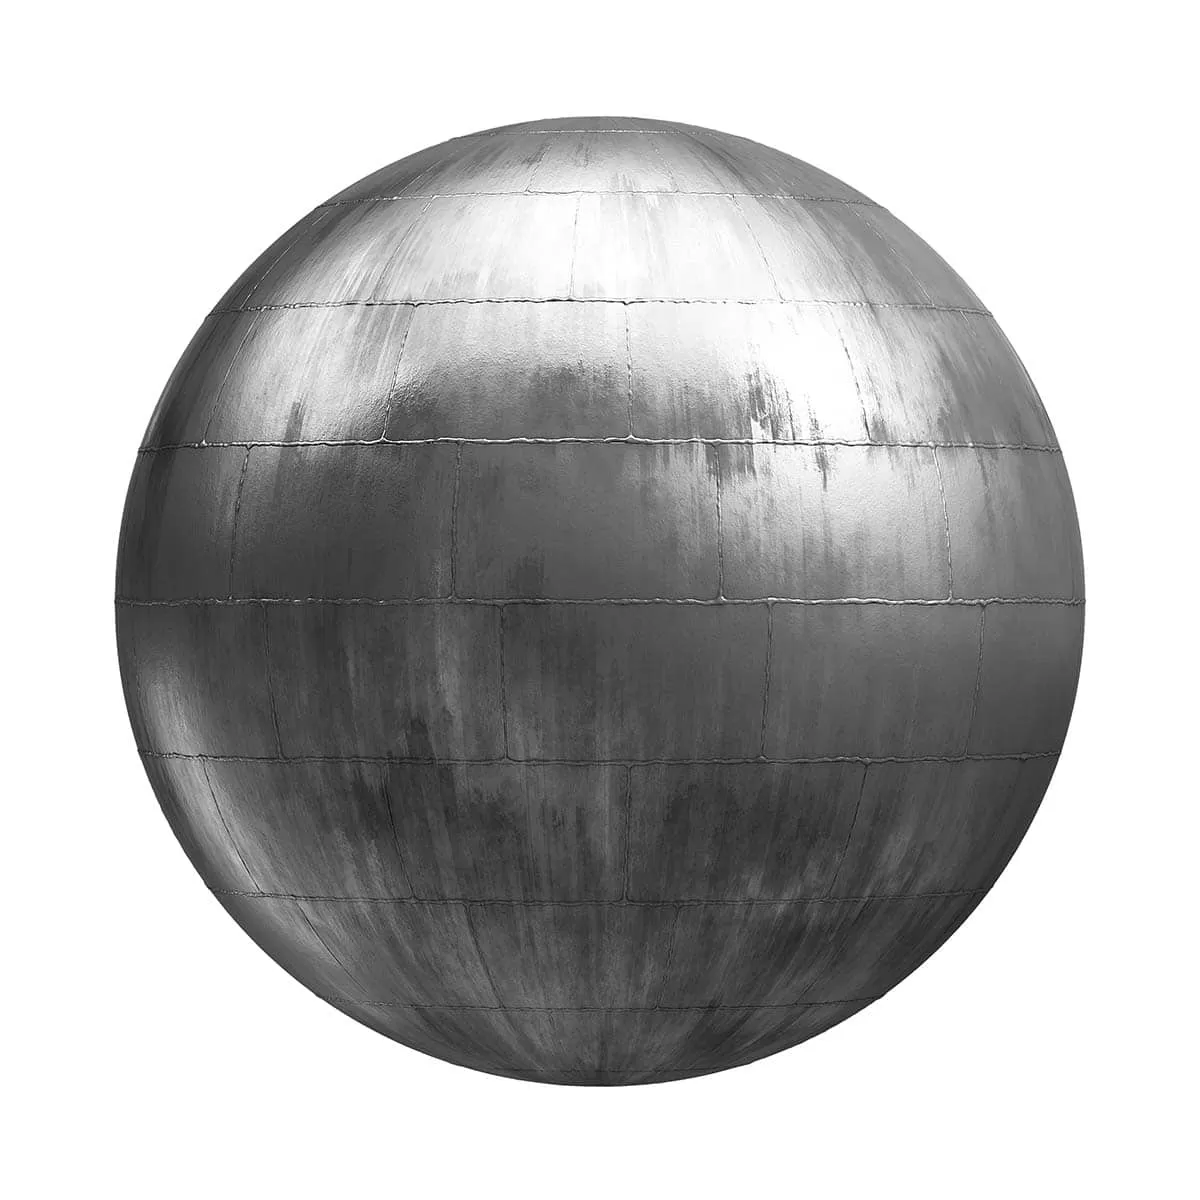 PBR Textures Volume 26 – Metals – 4K – 8K – welded_metal_panels_26_66